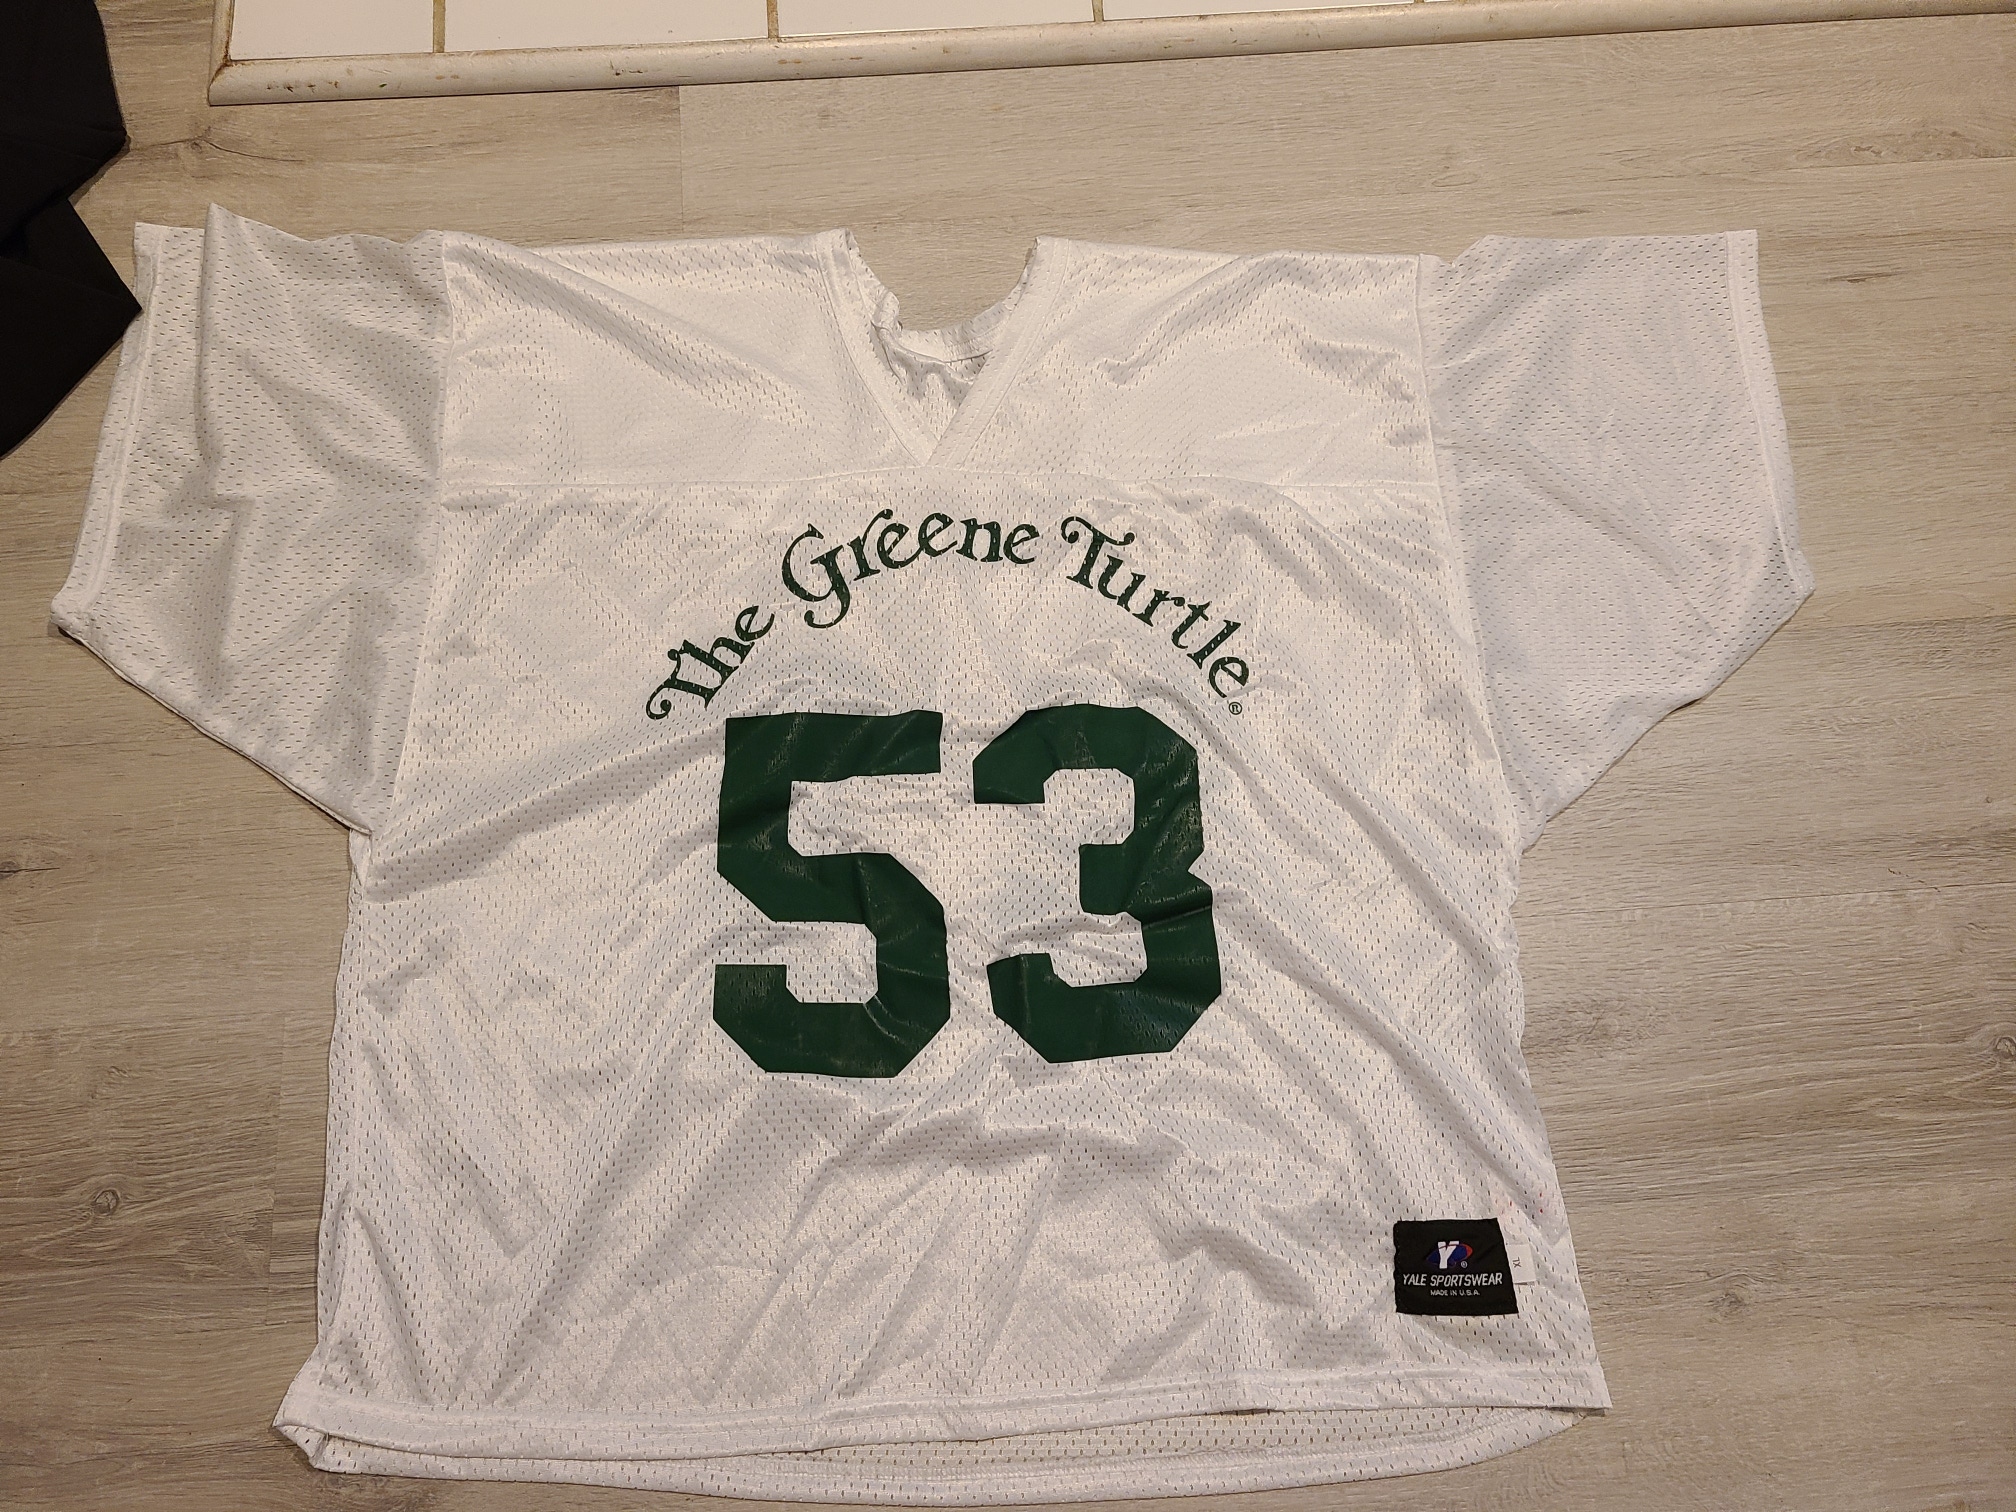 Old school Greene Turtle Lacrosse jersey